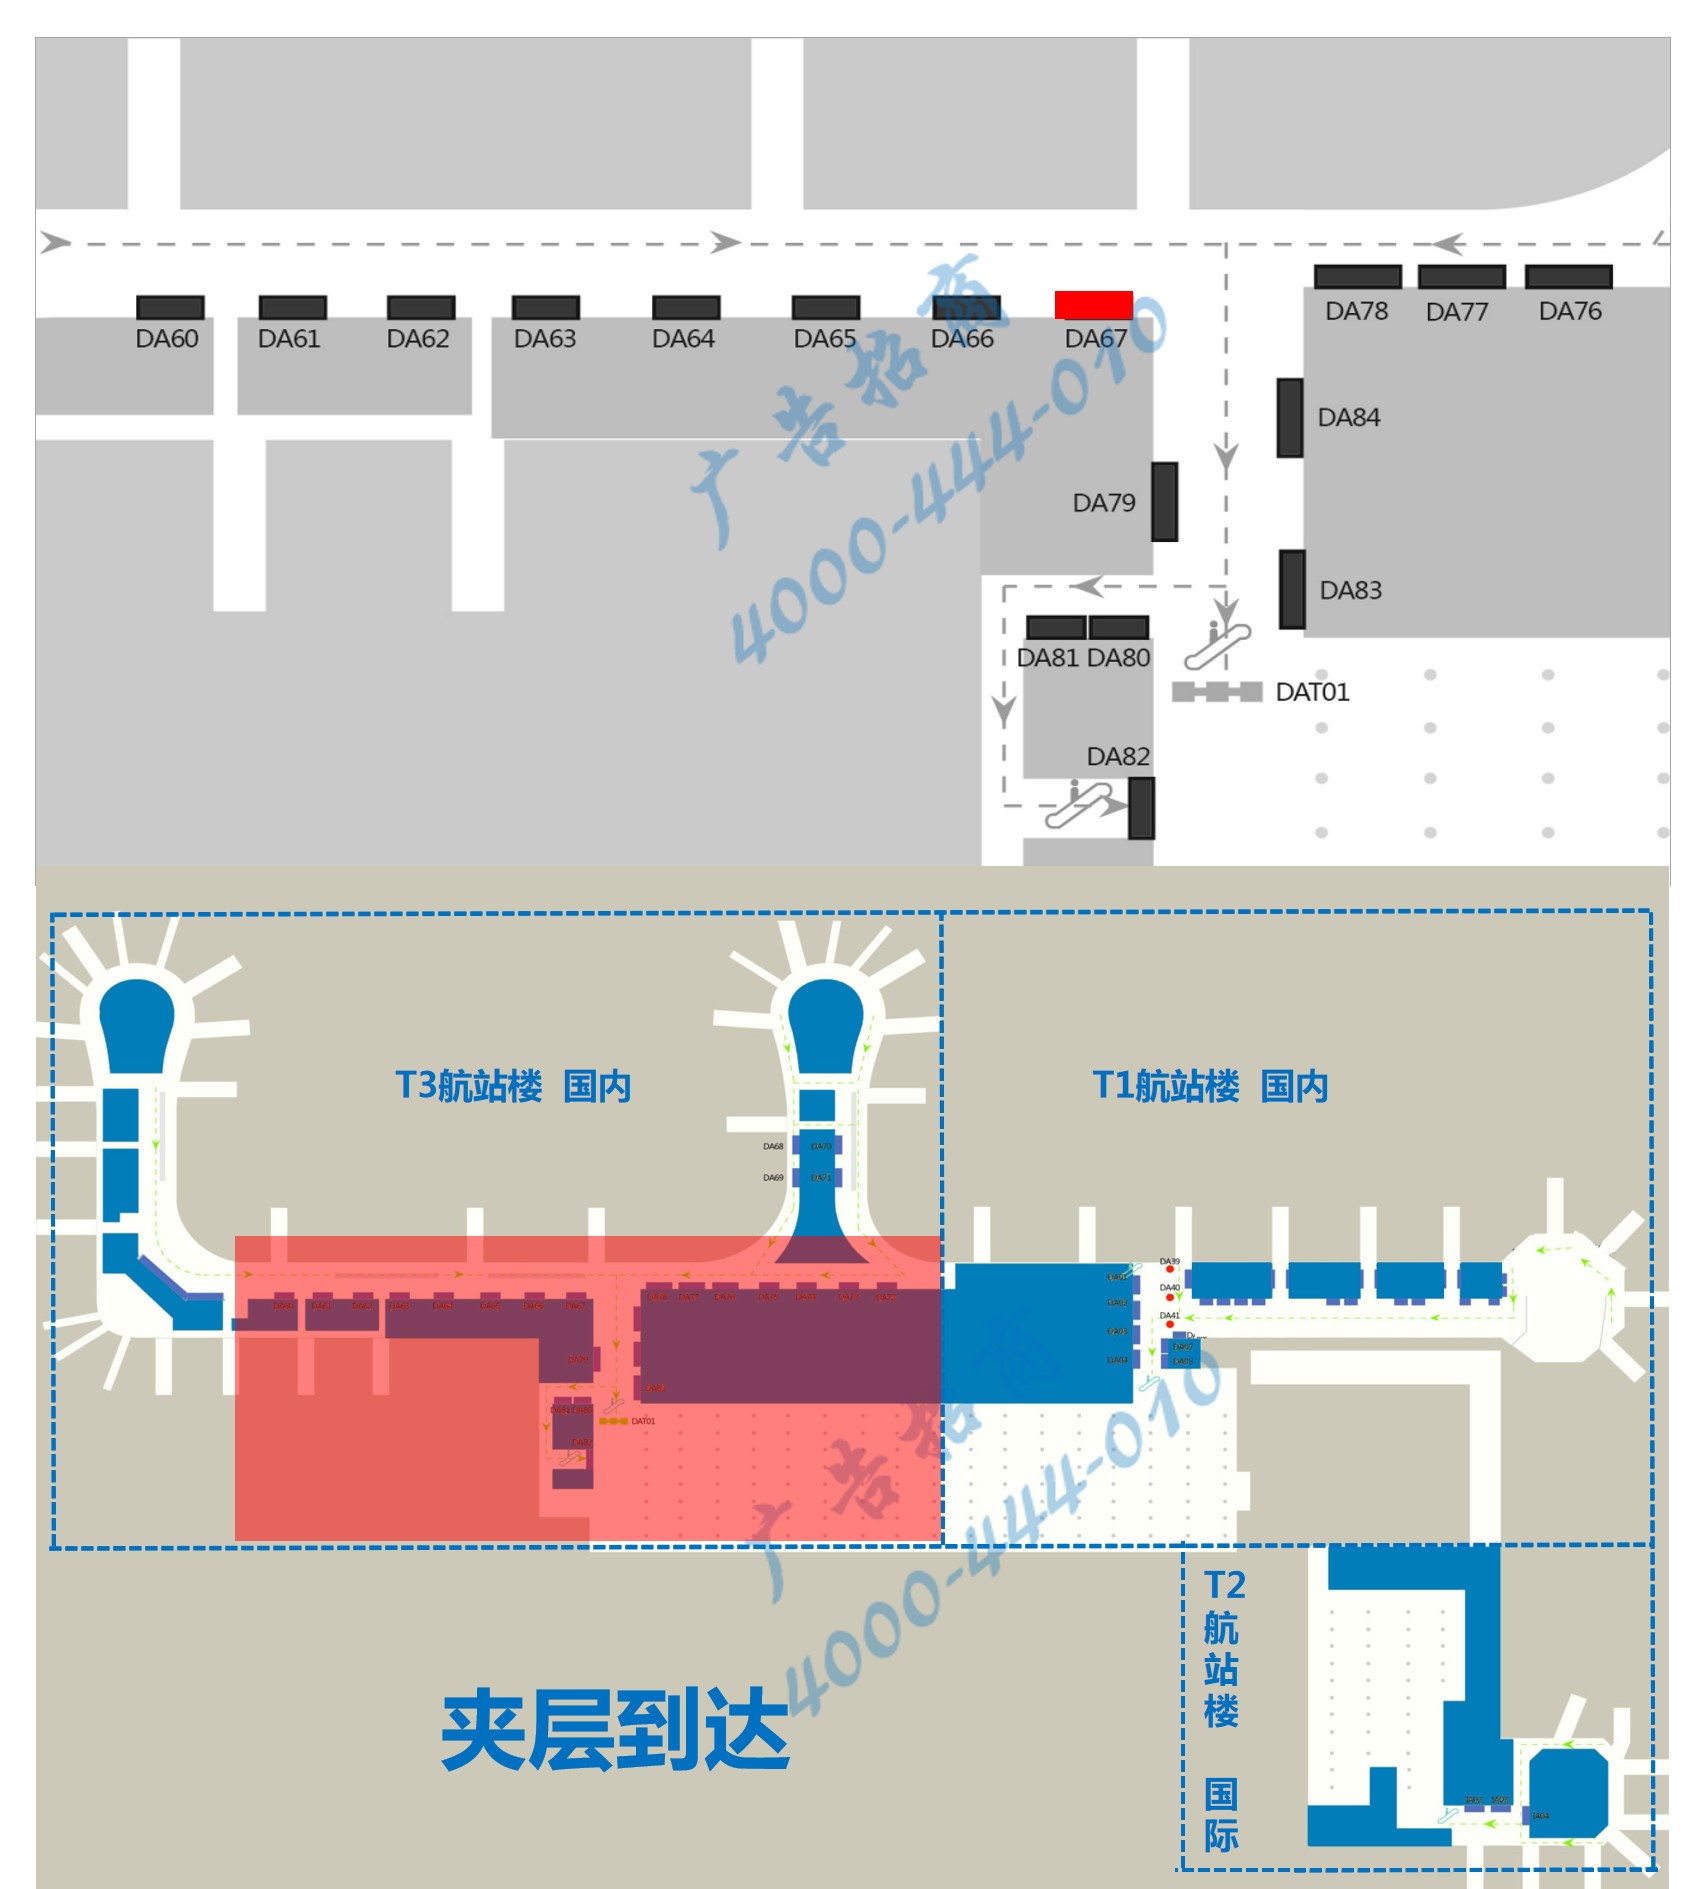 杭州萧山机场广告-T3到达通廊自动扶梯旁灯箱DA67位置图